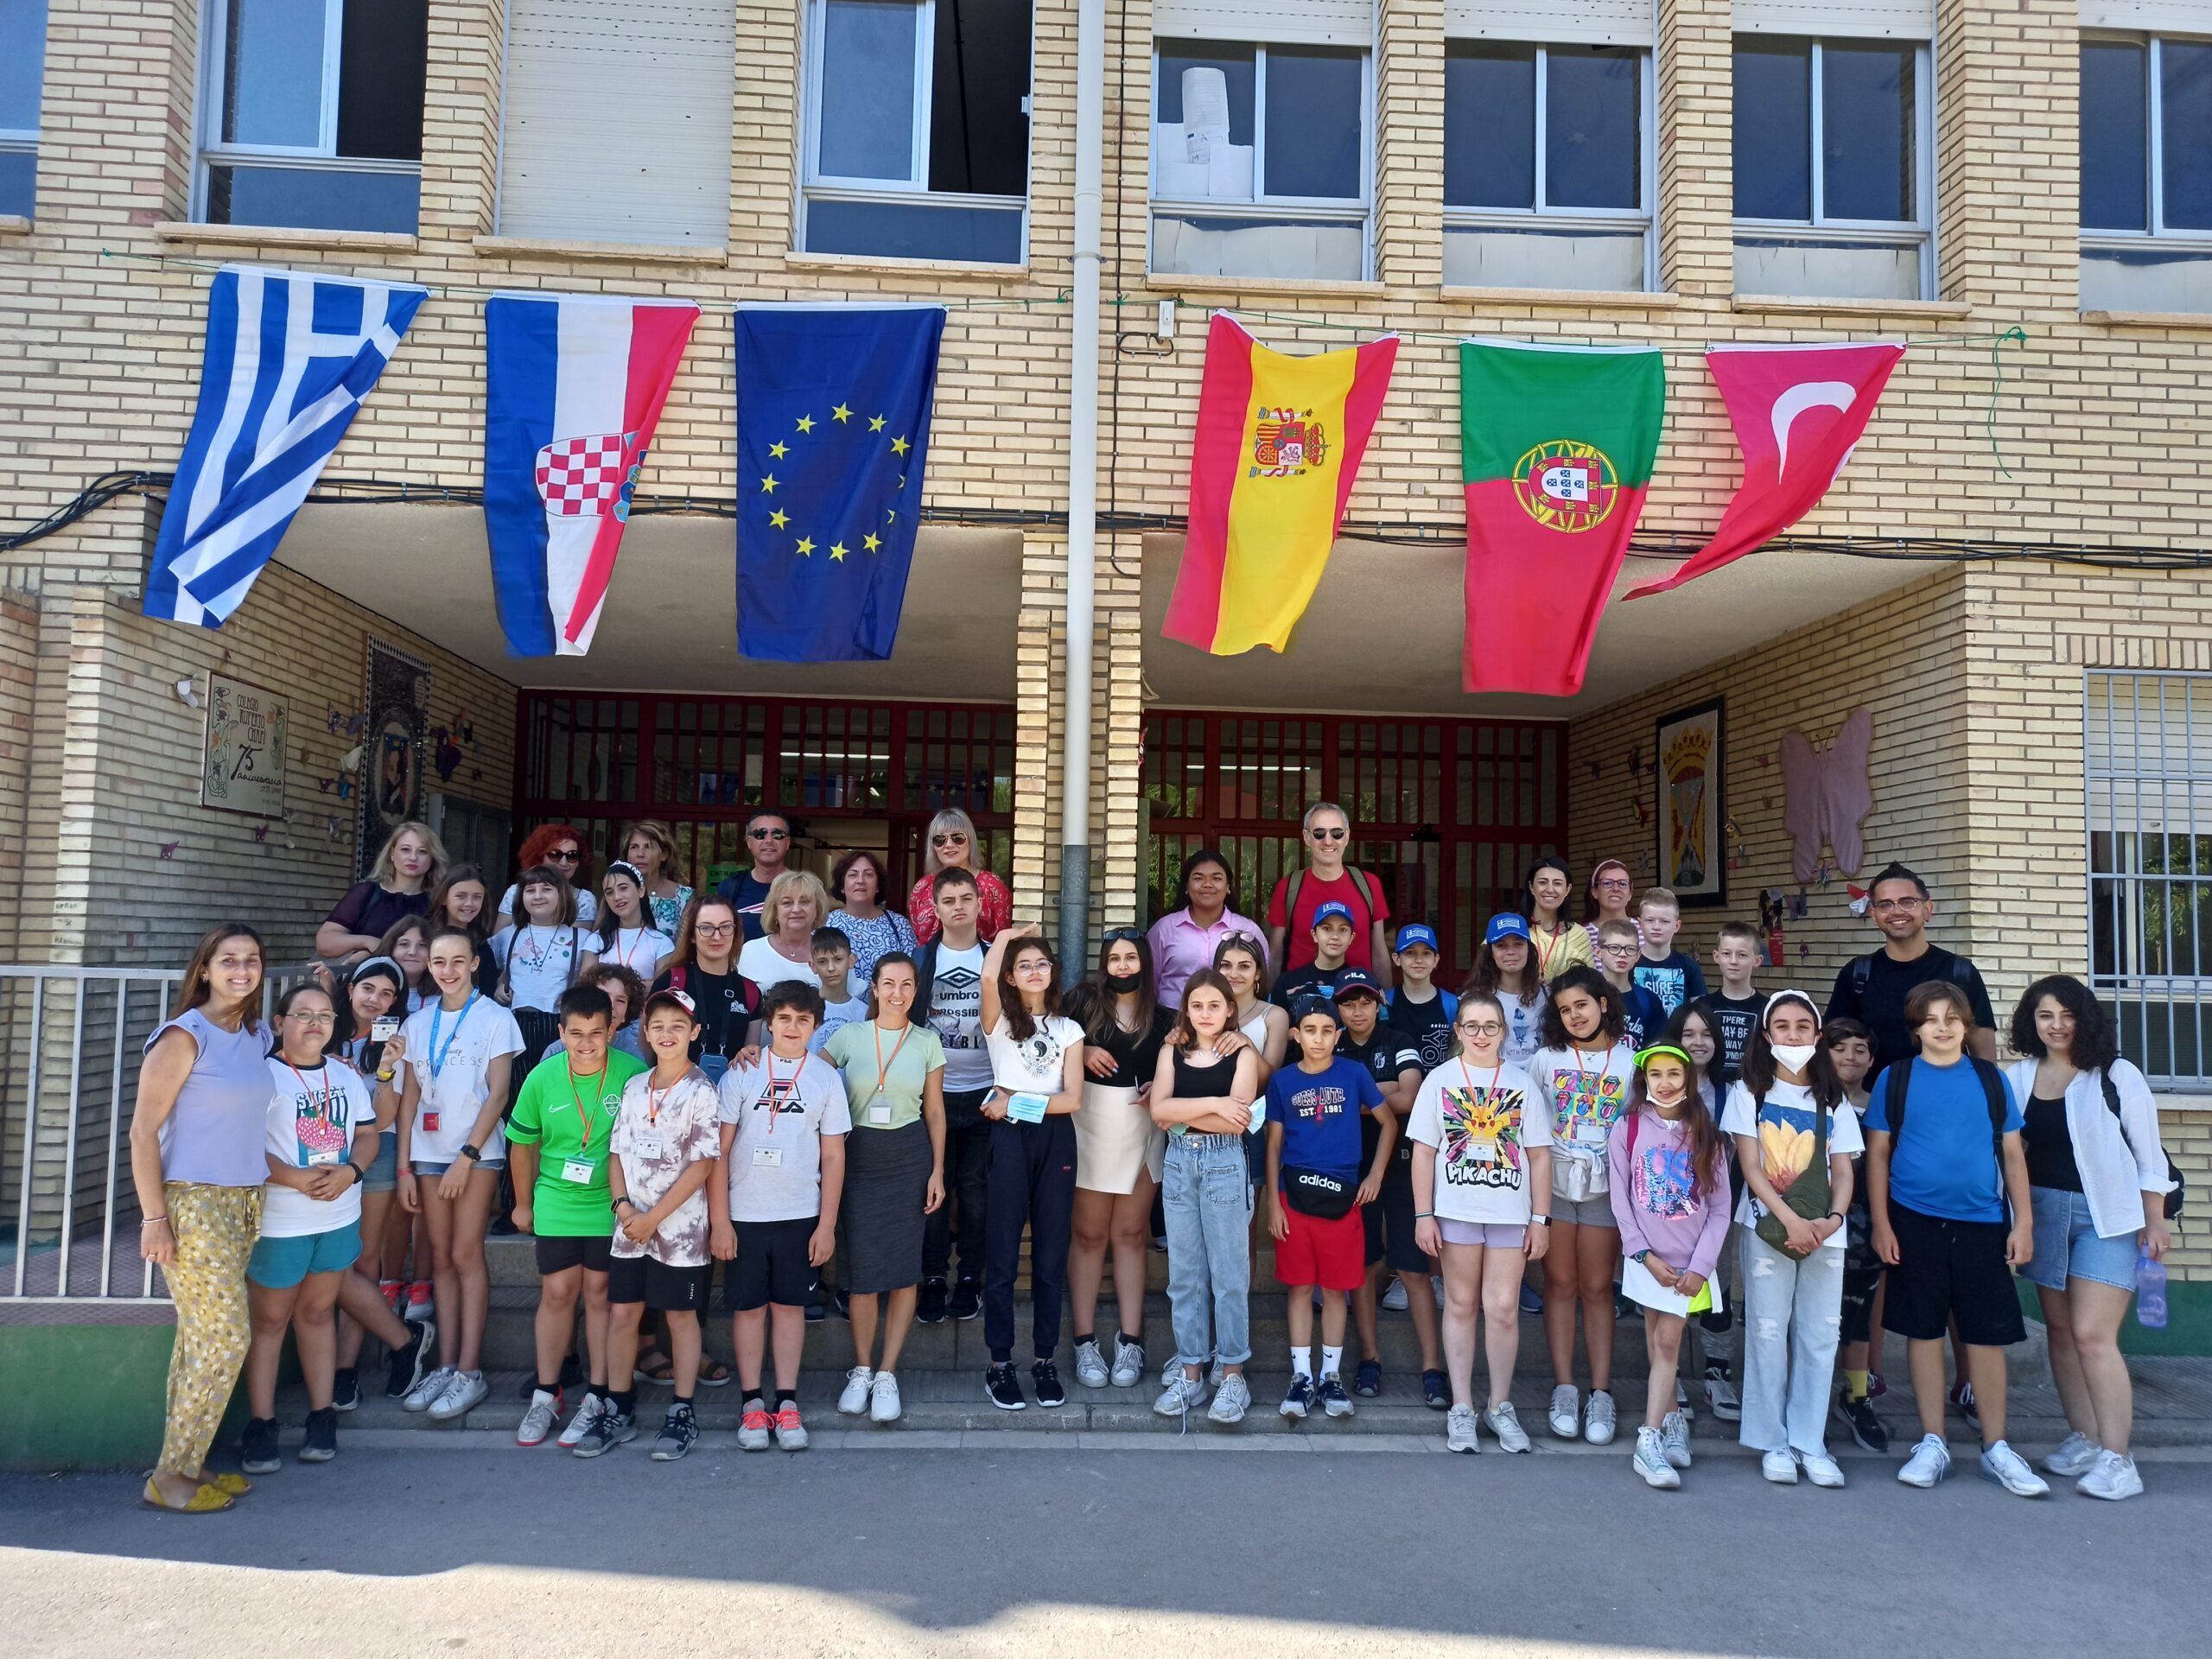 Un total de 12 docentes y 20 alumnos/as europeos visitan Villena en su proyecto Erasmus + del CEIP Ruperto Chapí